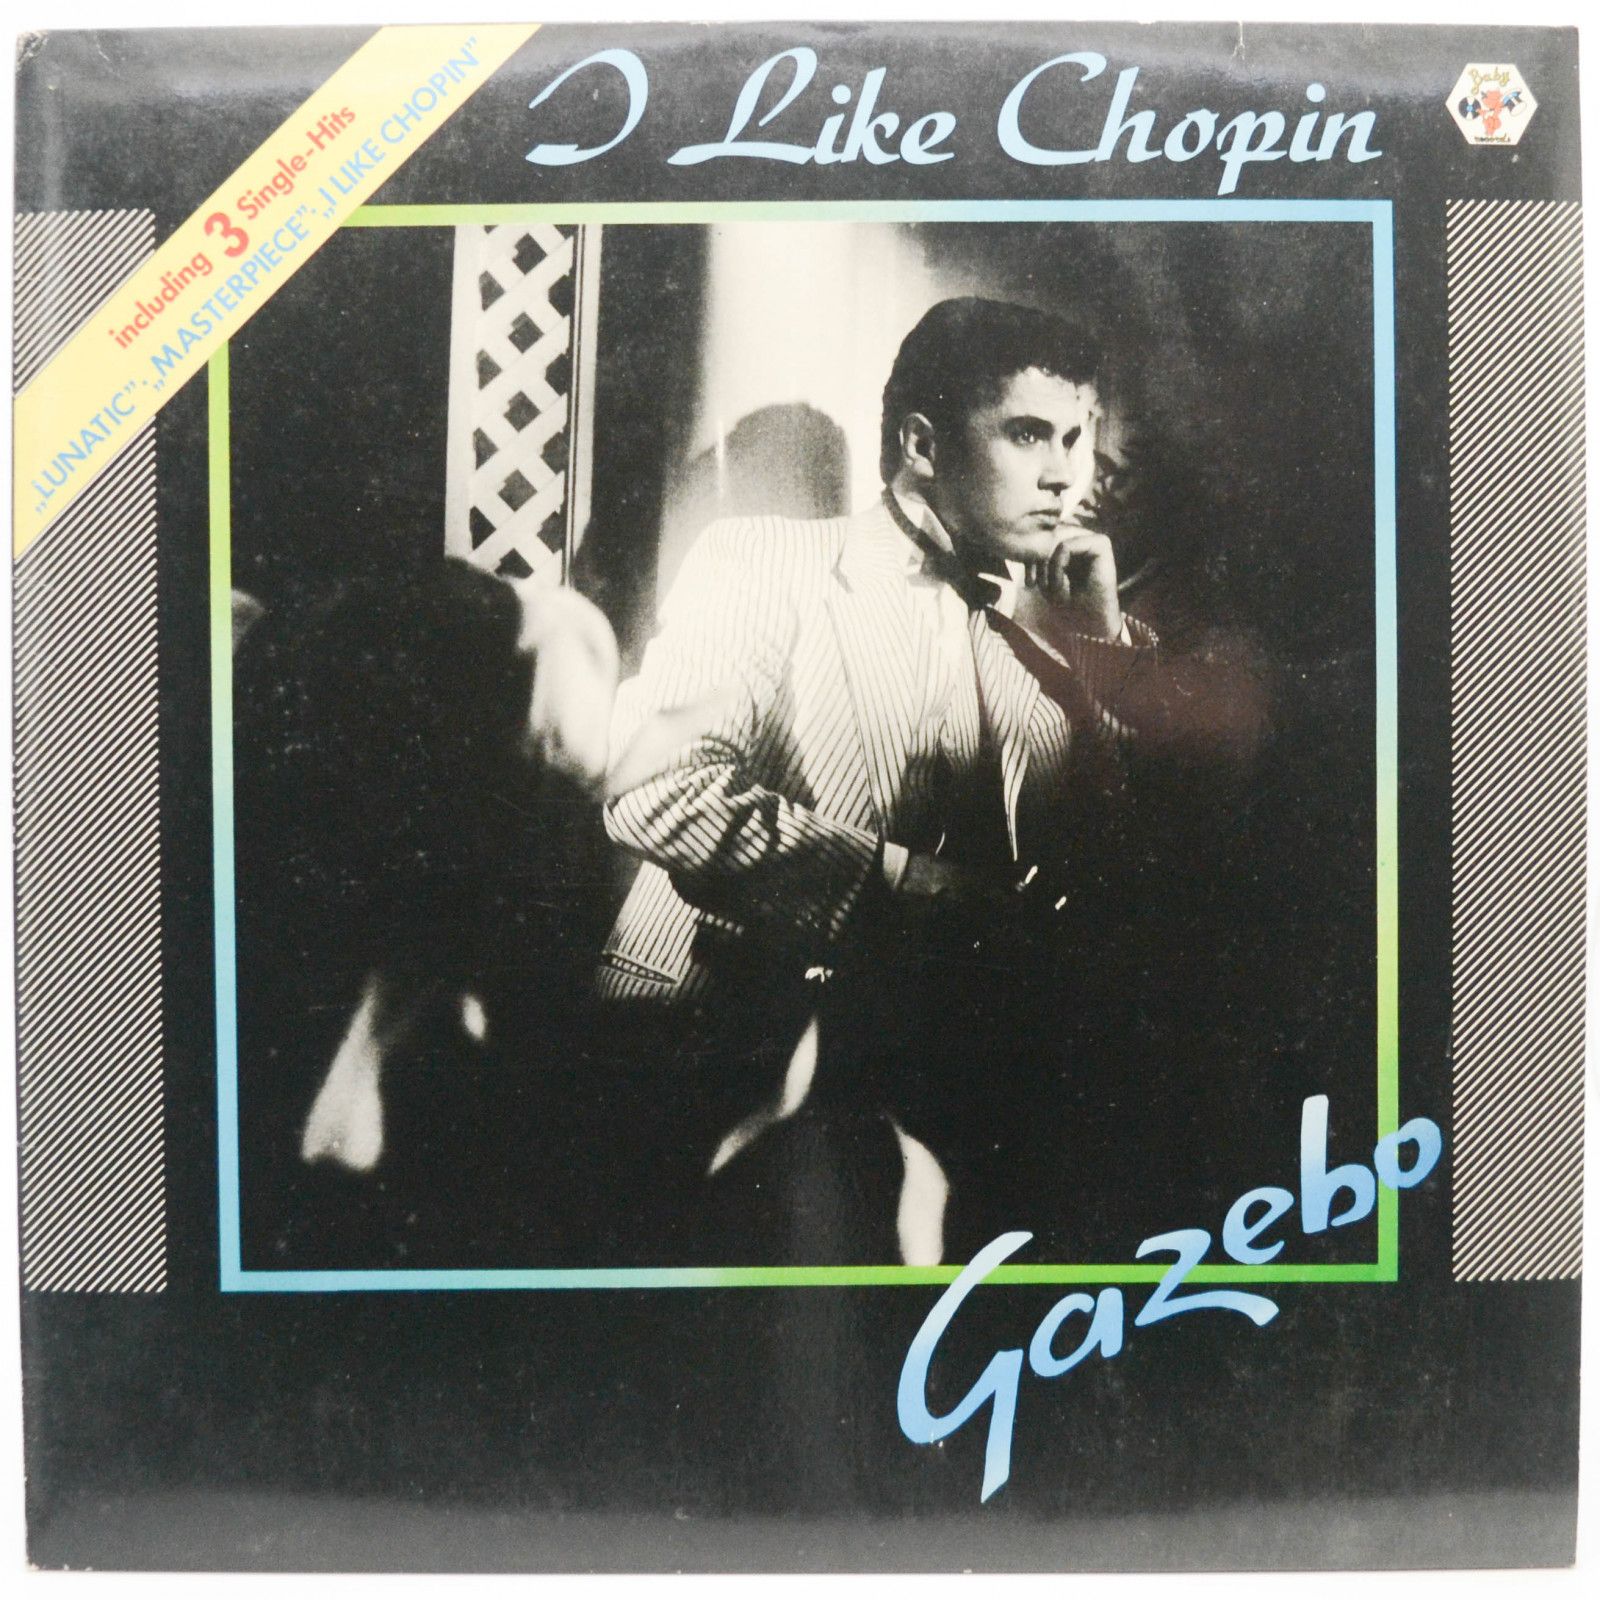 Gazebo — I Like Chopin, 1983